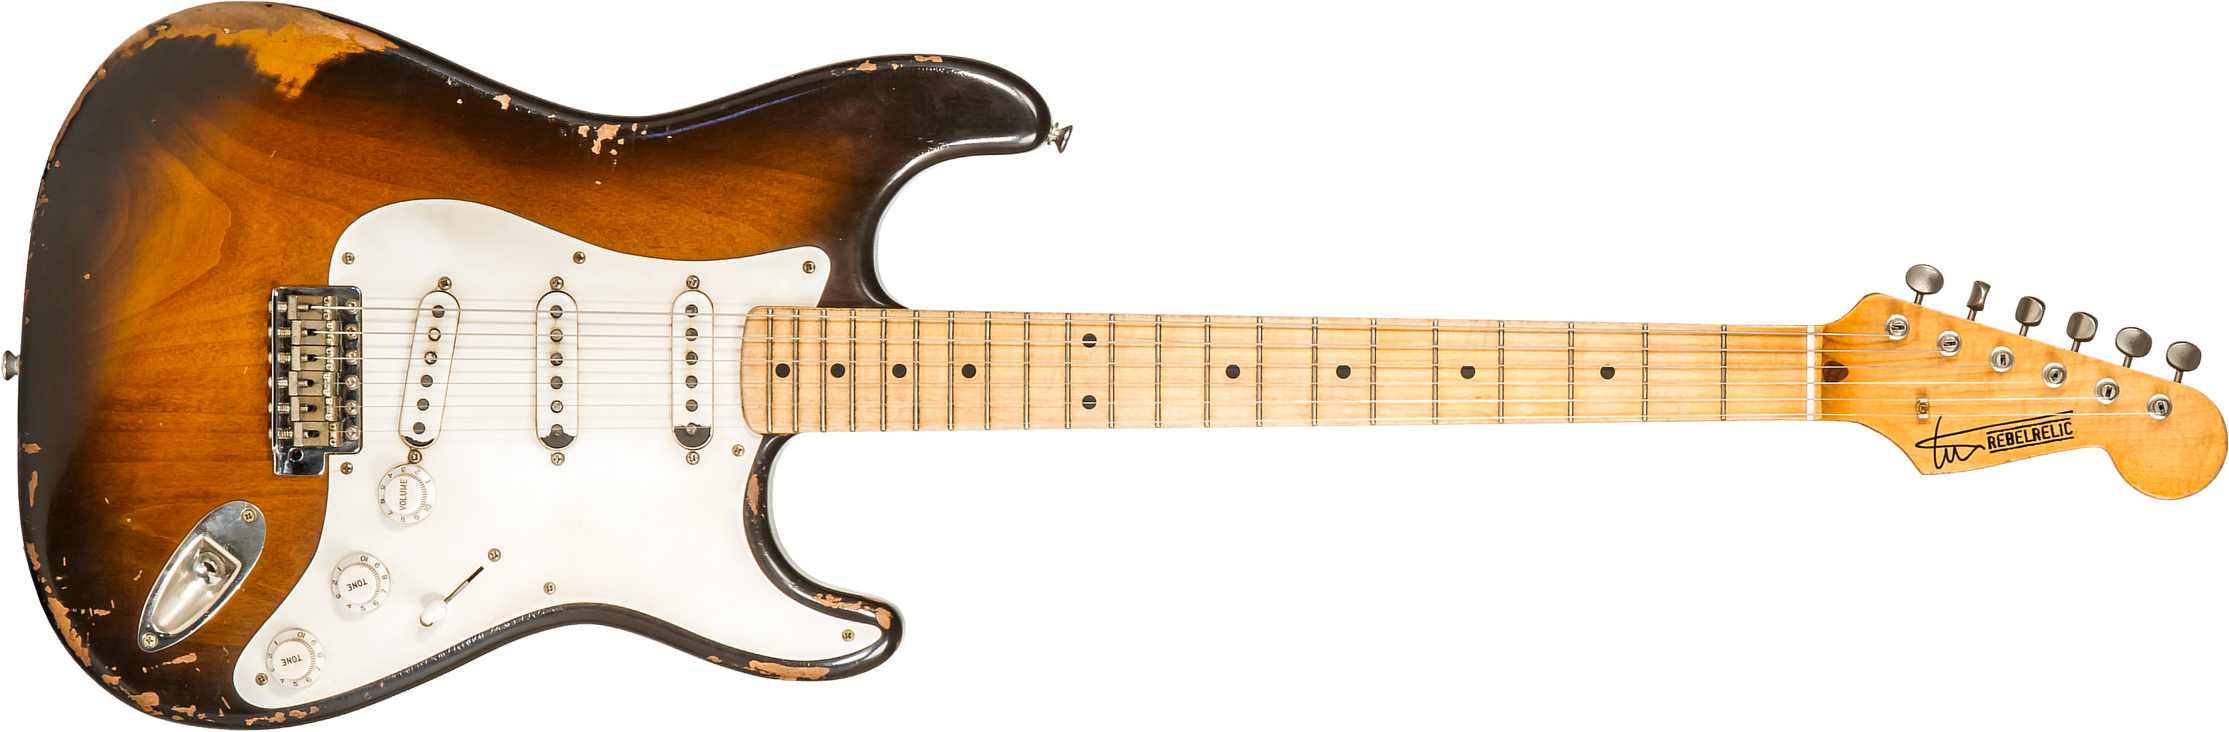 Rebelrelic S-series 54 3s Trem Mn #230103 - Medium Aged 2-tone Sunburst - Elektrische gitaar in Str-vorm - Main picture